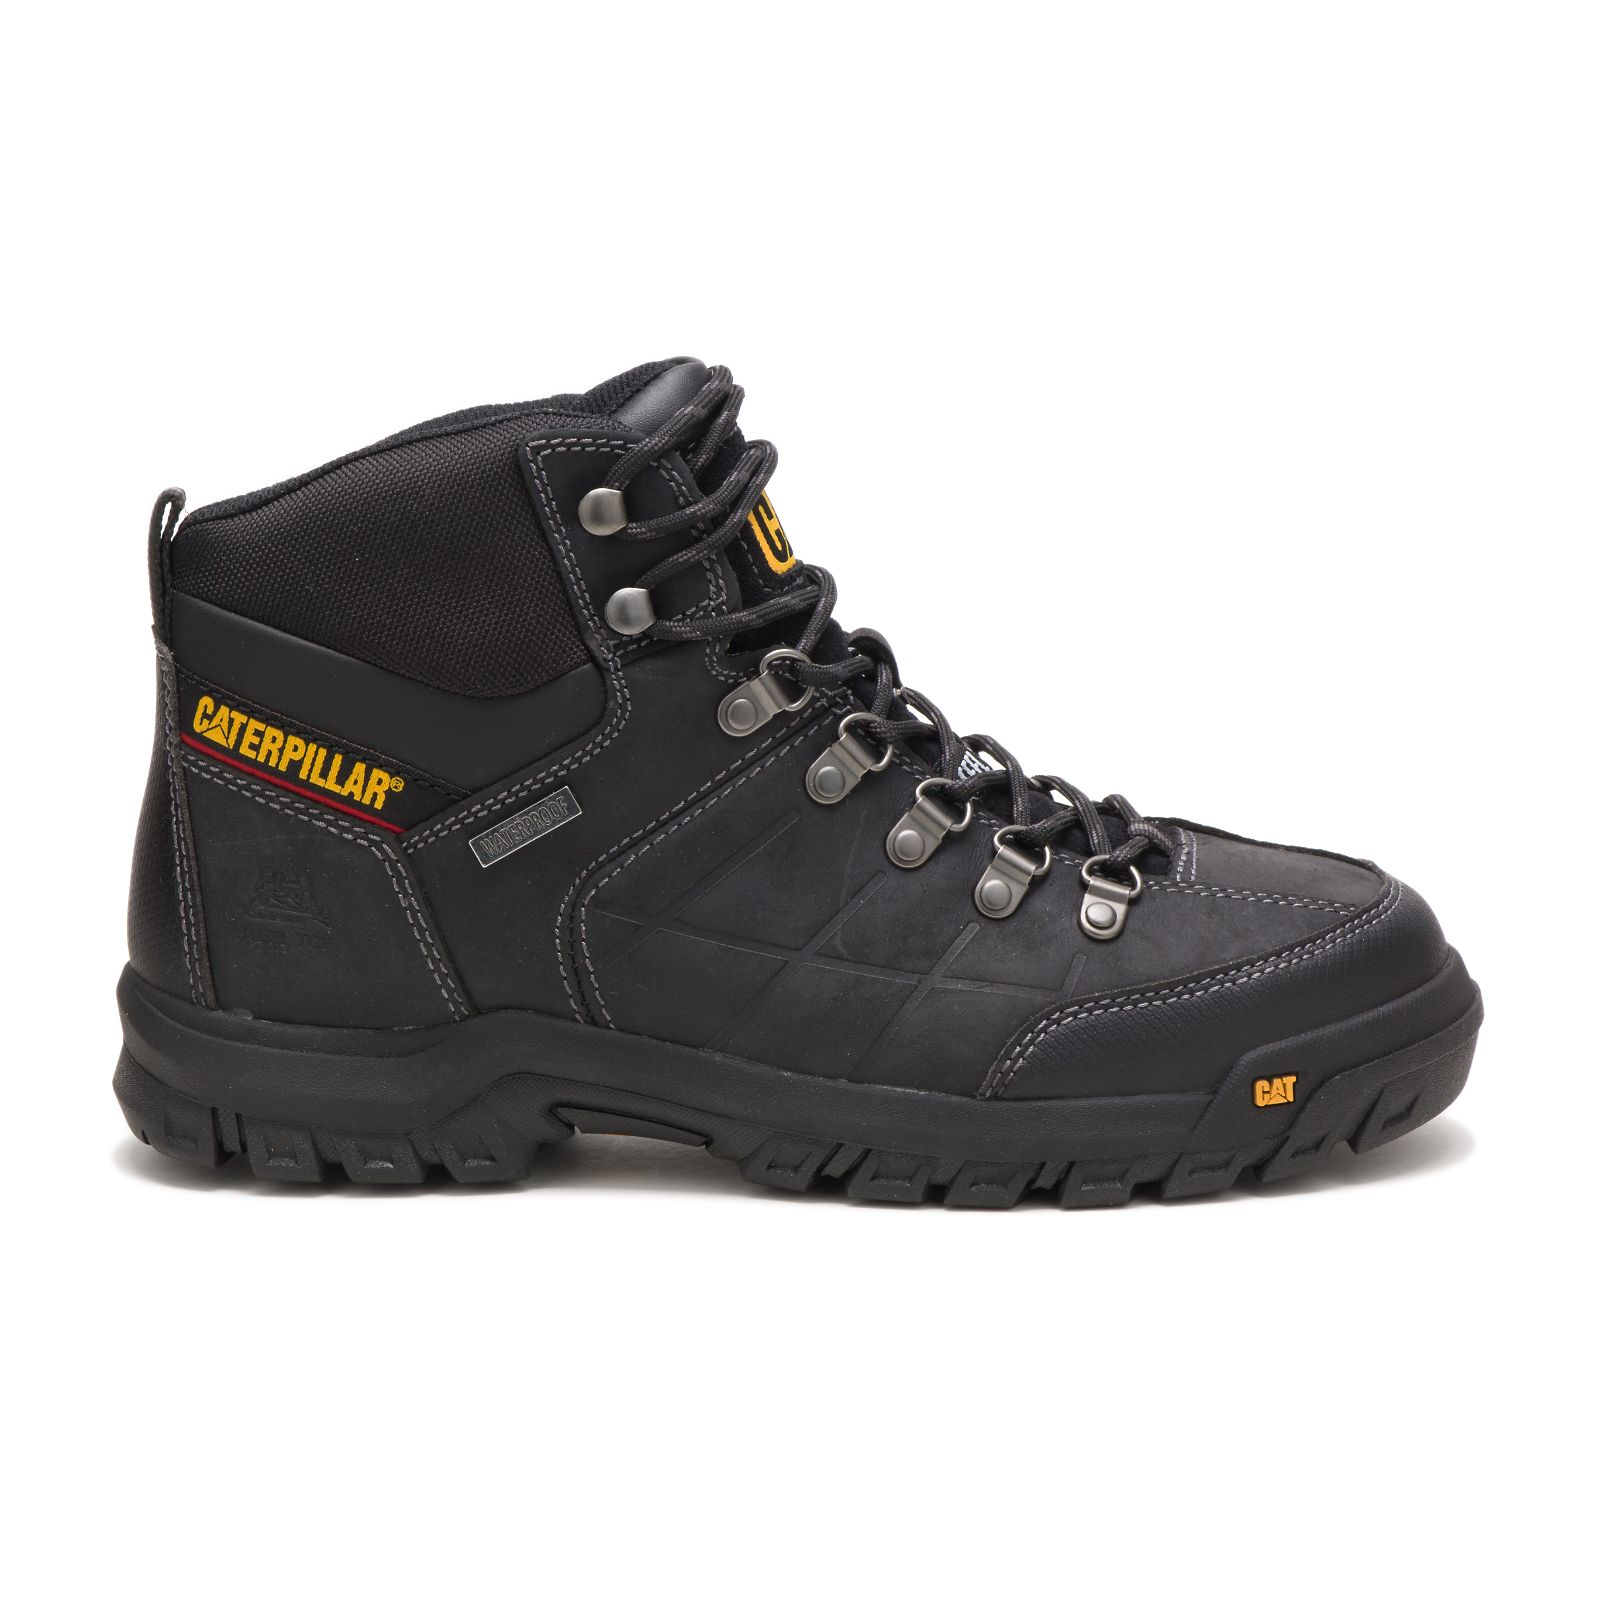 Men's Caterpillar Threshold Waterproof Steel Toe Steel Toe Boots Black | Cat-625431